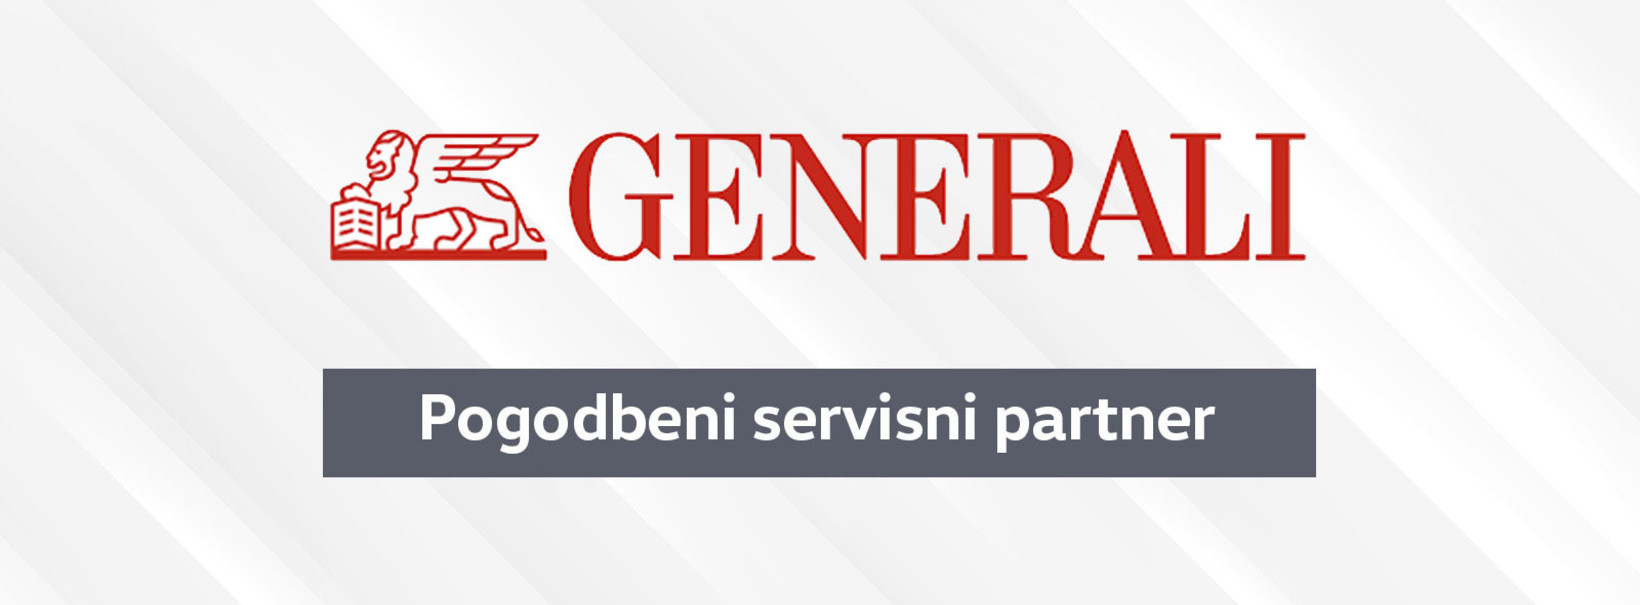 Zavarovalnica Generali - pogodbeni servisni partner